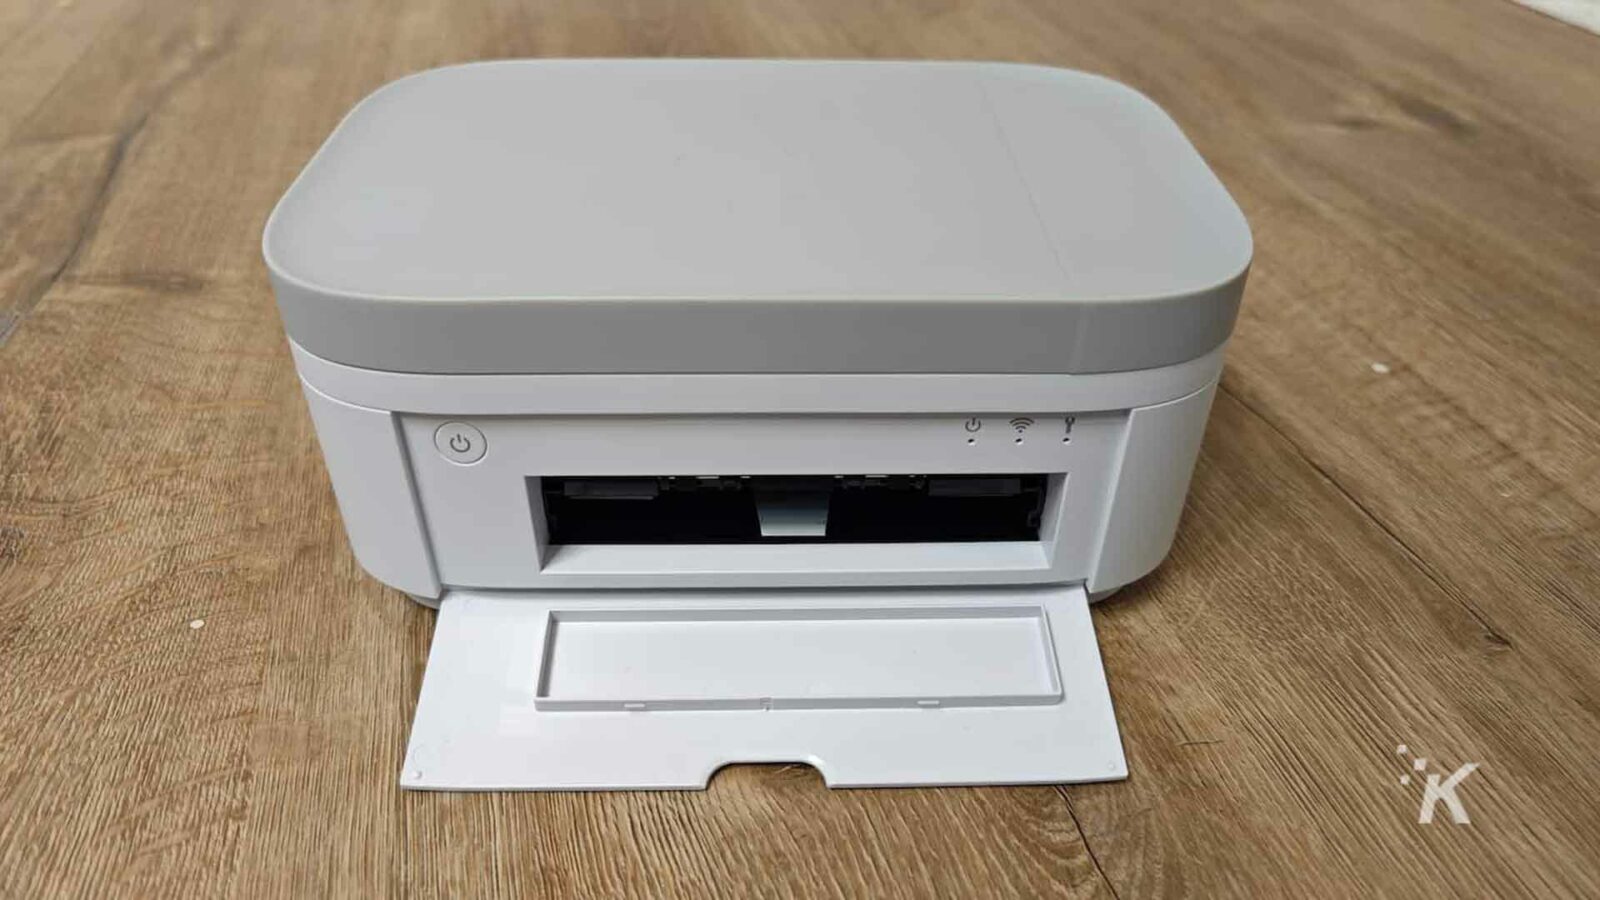 HP-Drucker weiß auf dem Boden